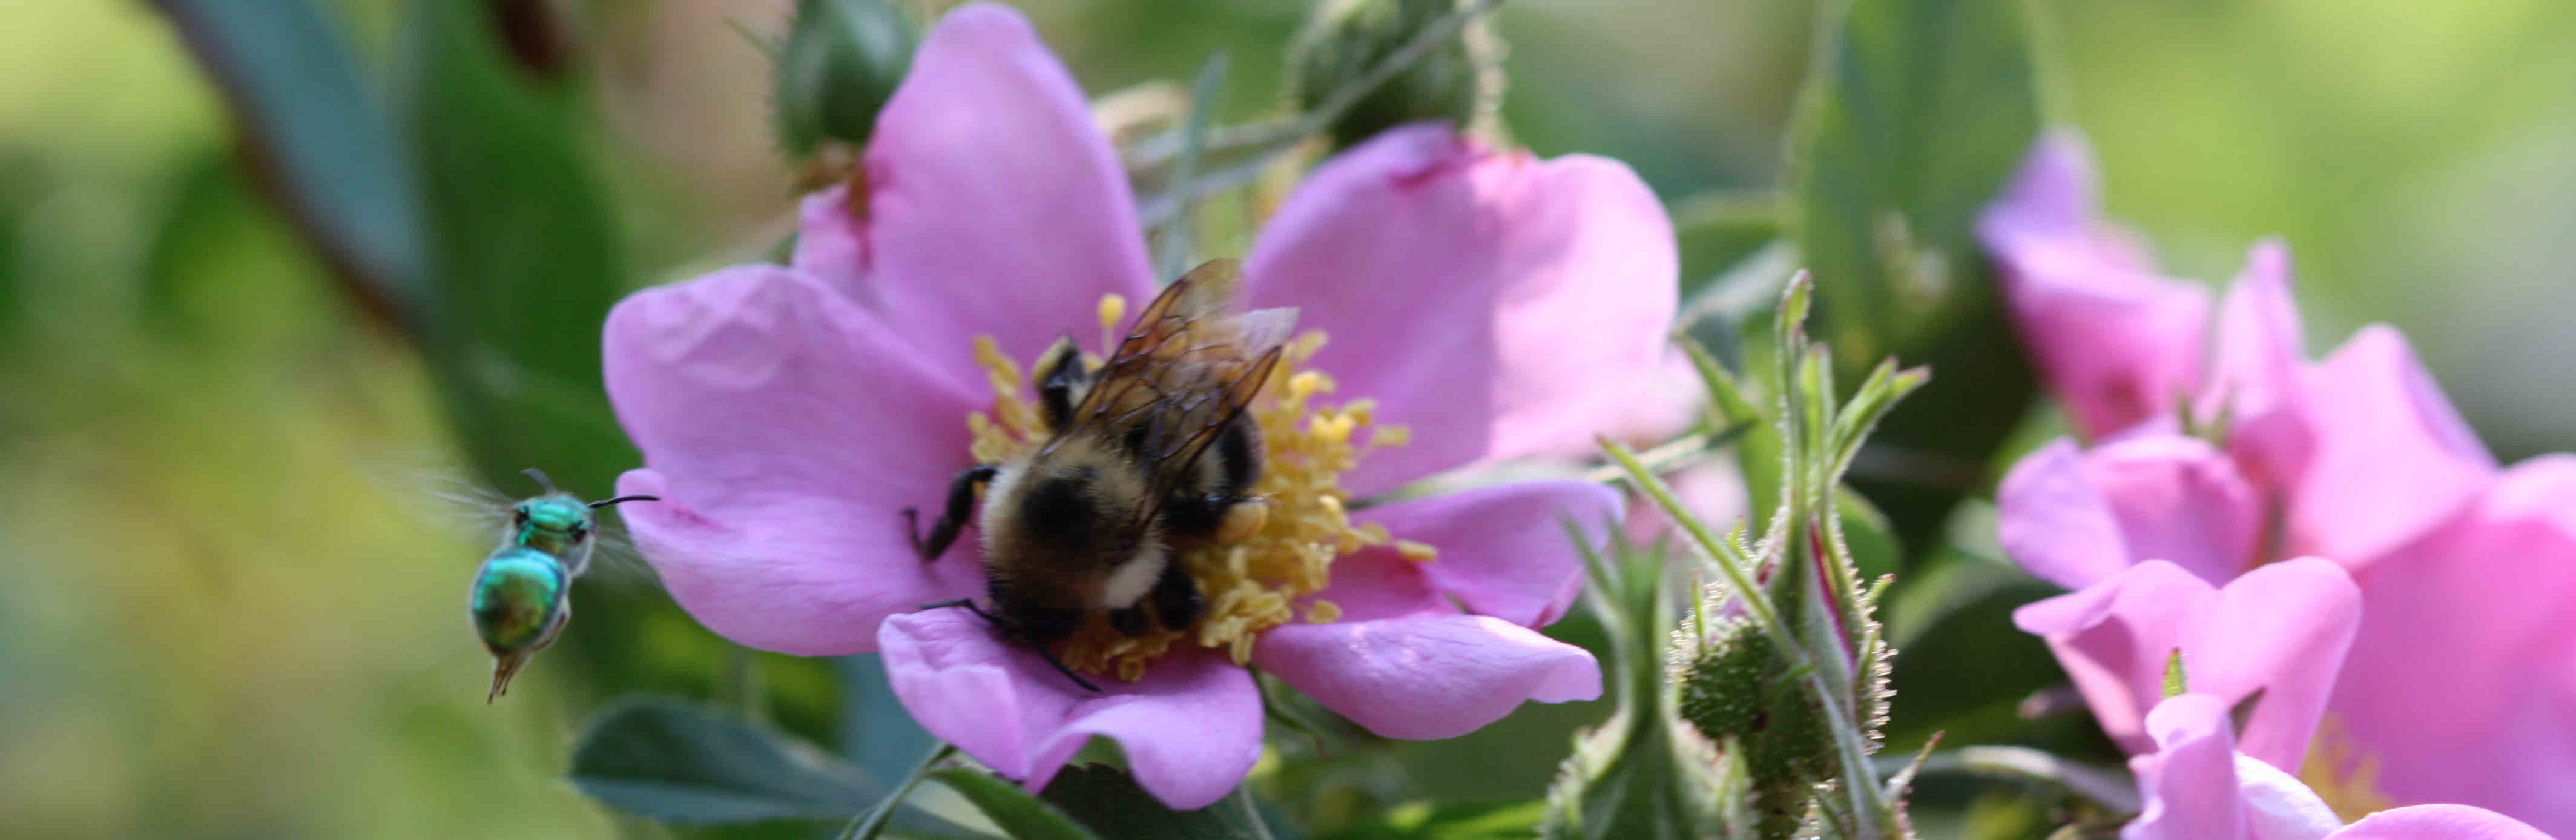 Bee in purple flower